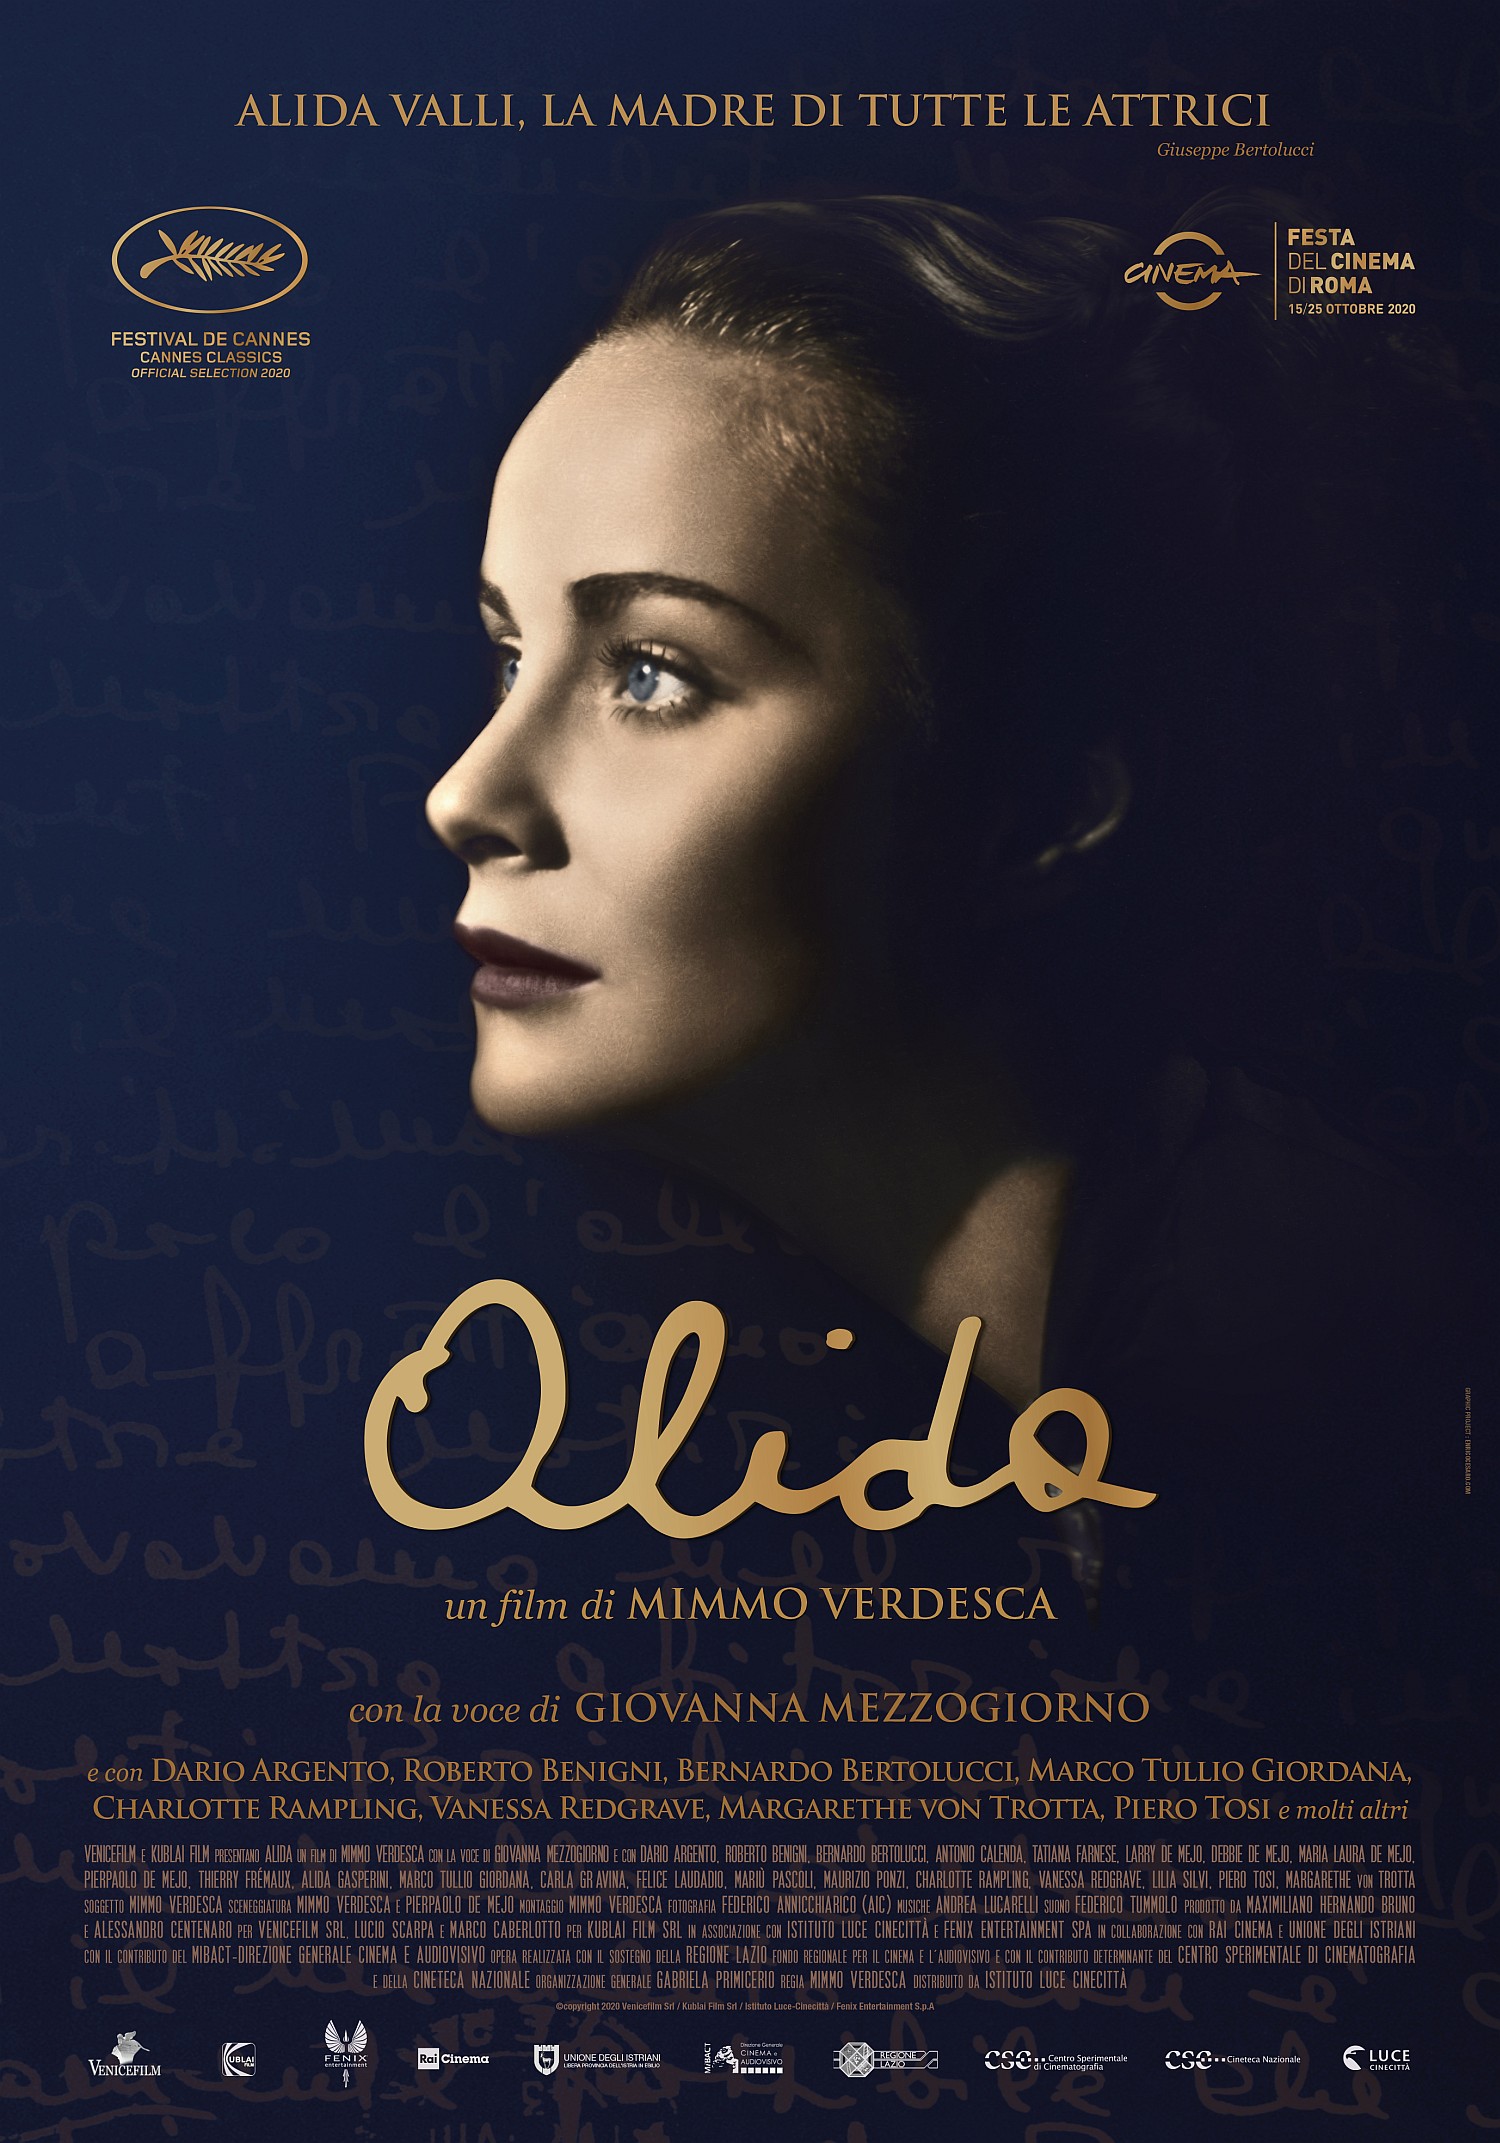 Al momento stai visualizzando Dal 17 al 19 maggio al Visionario di Udine il documentario che racconta la vita della leggendaria Alida Valli